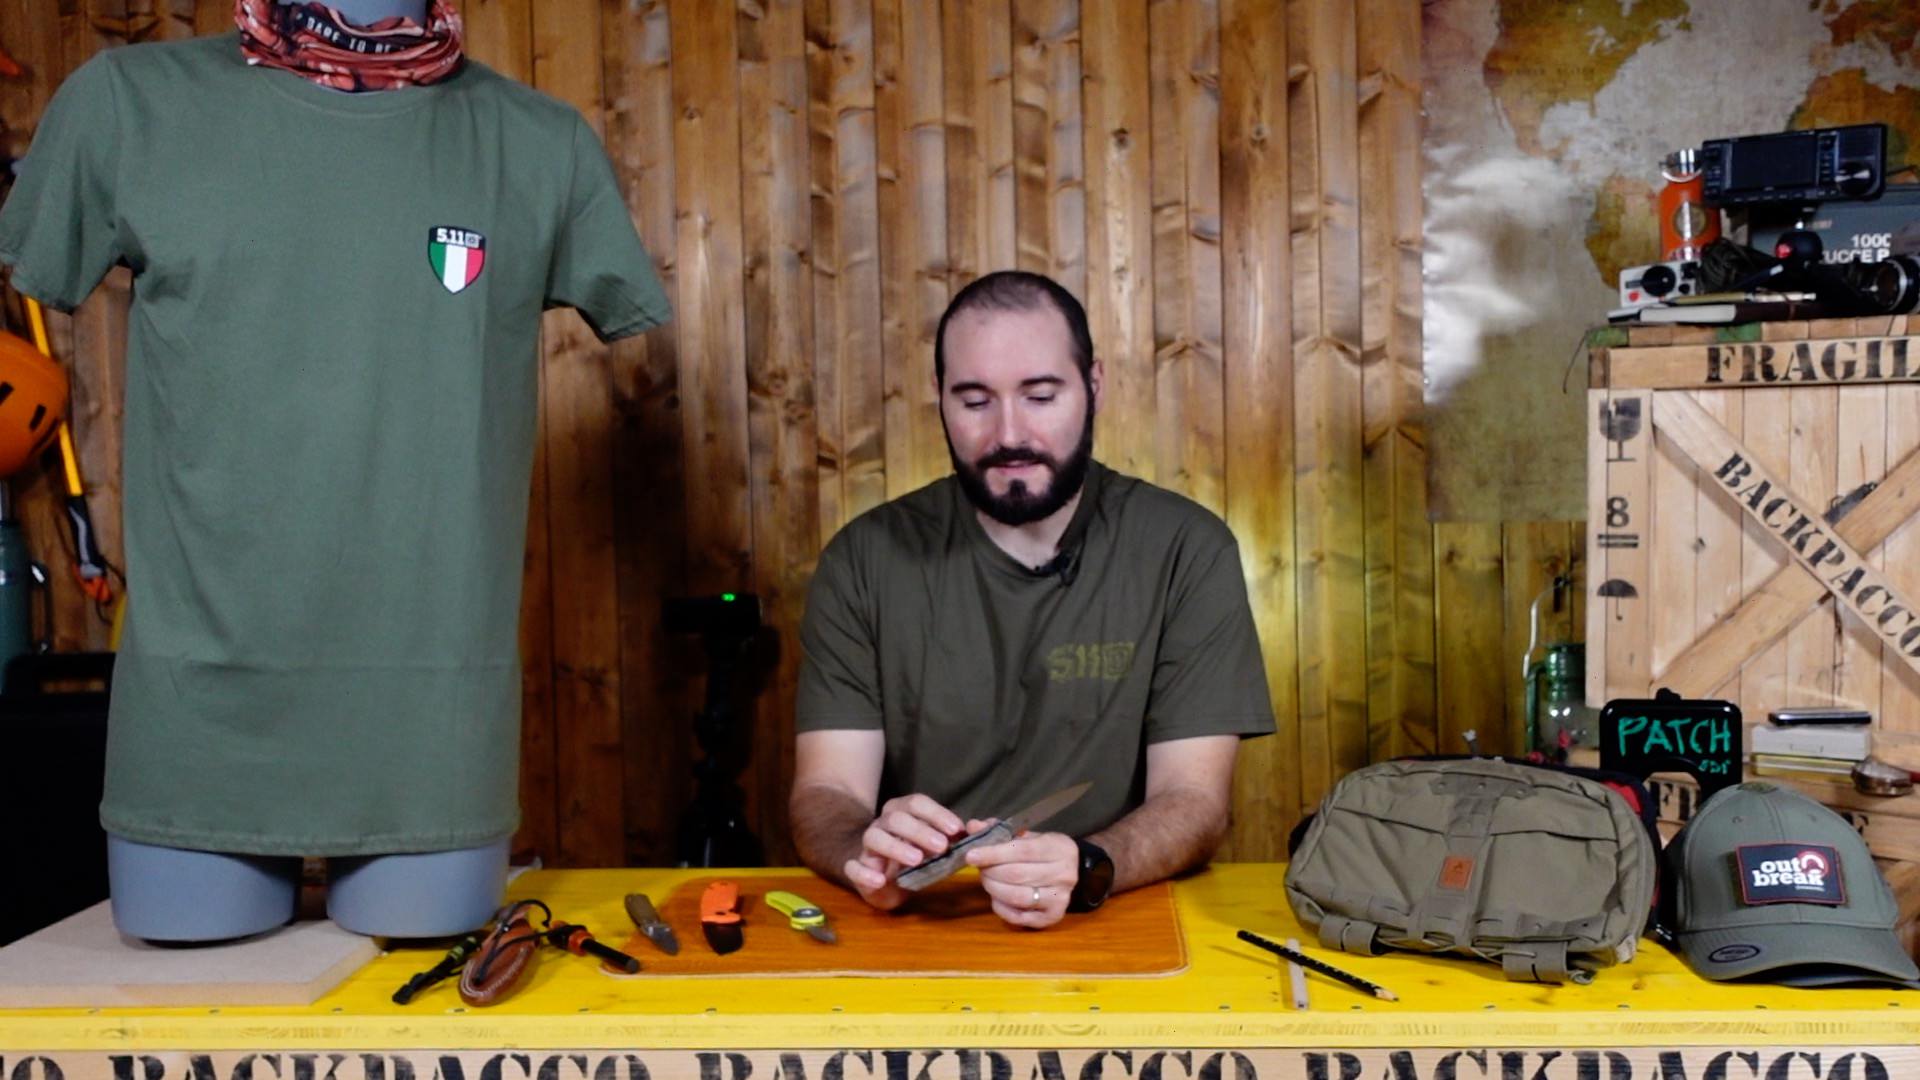 COPERTINA DEL VIDEO DOVE PAOLO DI BACKPACCO SPIEGA THE SICILIAN DI FOX